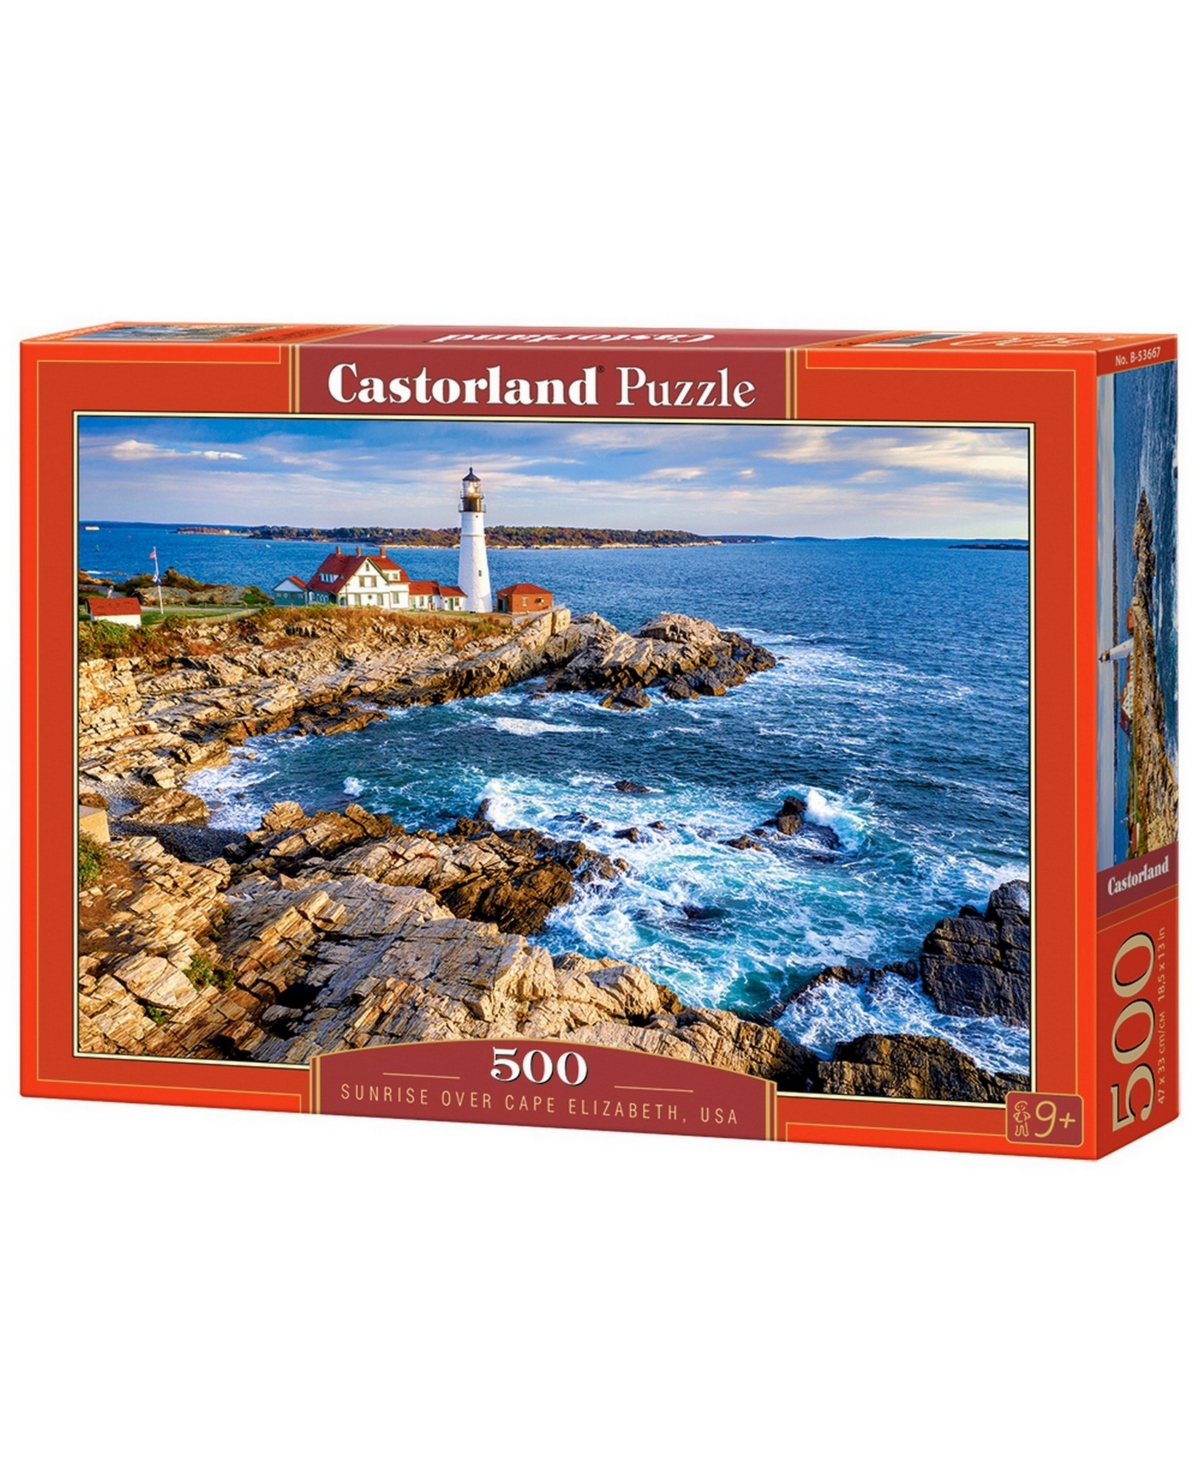 Castorland Sunrise Over Cape Elizabeth, Usa Jigsaw Puzzle Set, 500 Piece In Multicolor